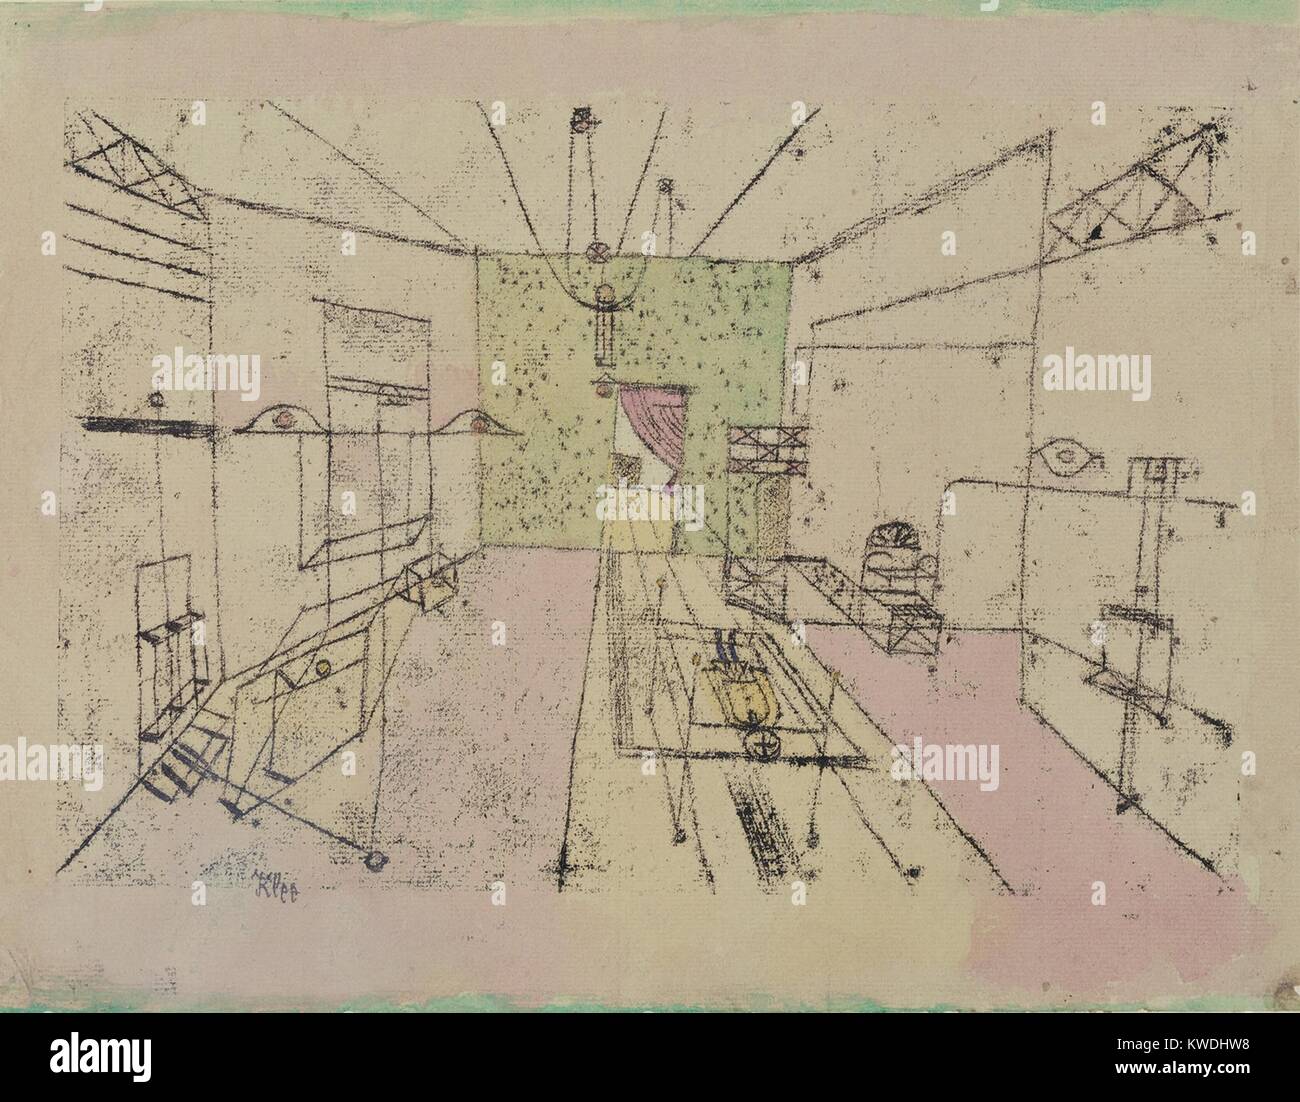 PHANTOM Perspektive, von Paul Klee, 1920, Schweizer Zeichnung, Aquarell und Tusche auf Papier. Zeichnung erzeugt die Illusion einer Innenraum, nicht identifizierbare Objekte. Eine Bauchlage Abbildung durch Rechtecke in der Perspektive ist begrenzt auf dem Boden (BSLOC 2017 7 48) Stockfoto